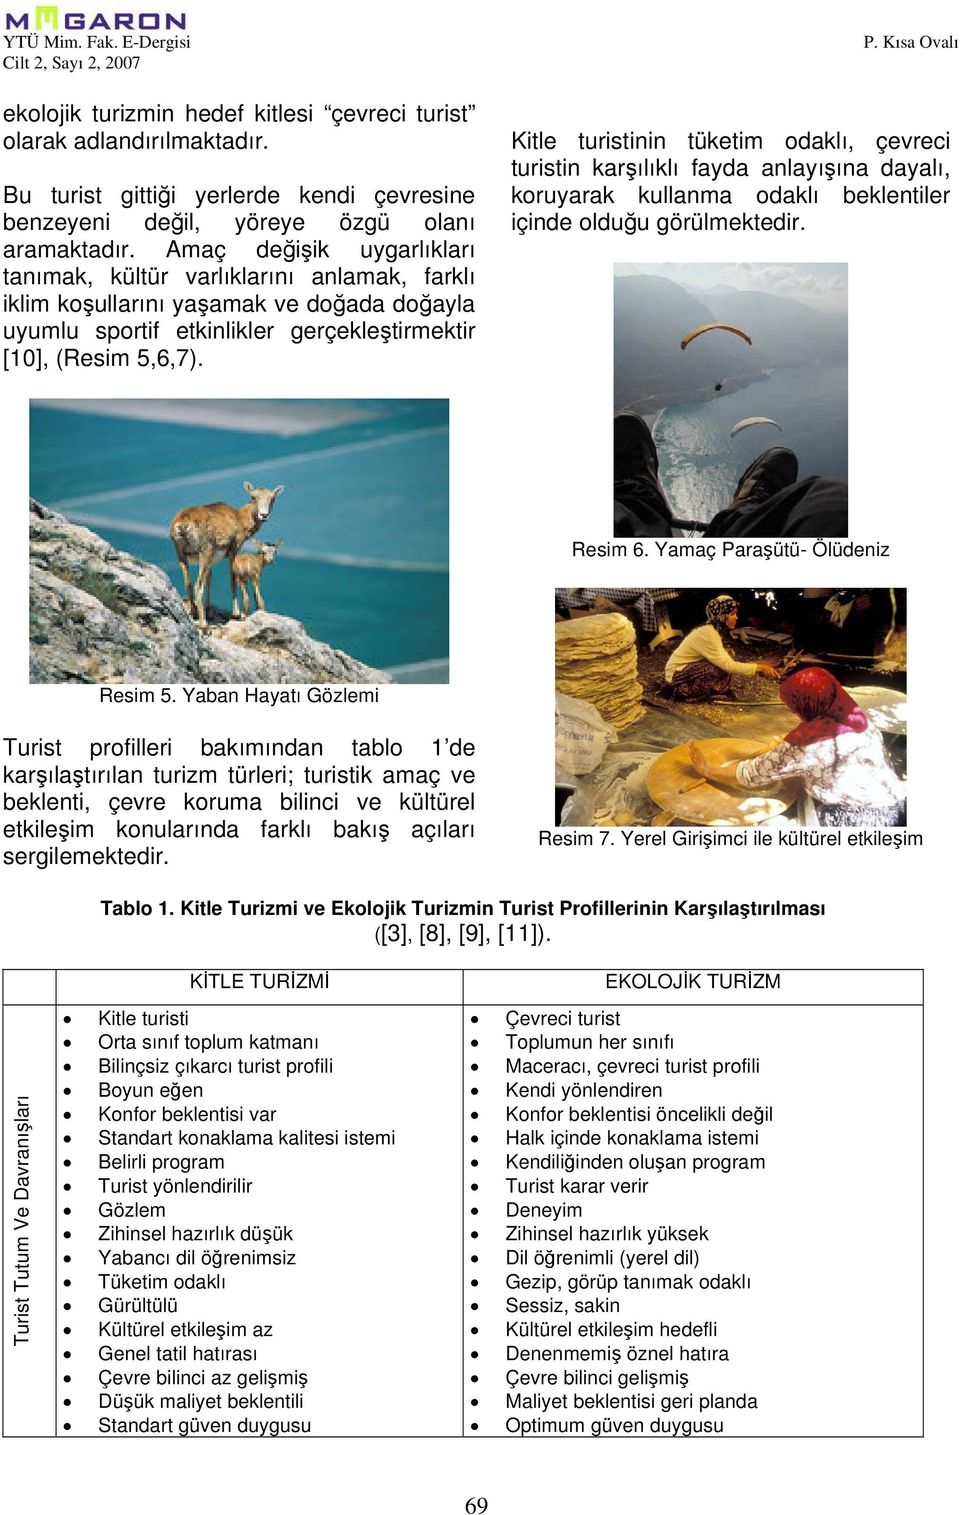 Kısa Ovalı Kitle turistinin tüketim odaklı, çevreci turistin karşılıklı fayda anlayışına dayalı, koruyarak kullanma odaklı beklentiler içinde olduğu görülmektedir. Resim 6.